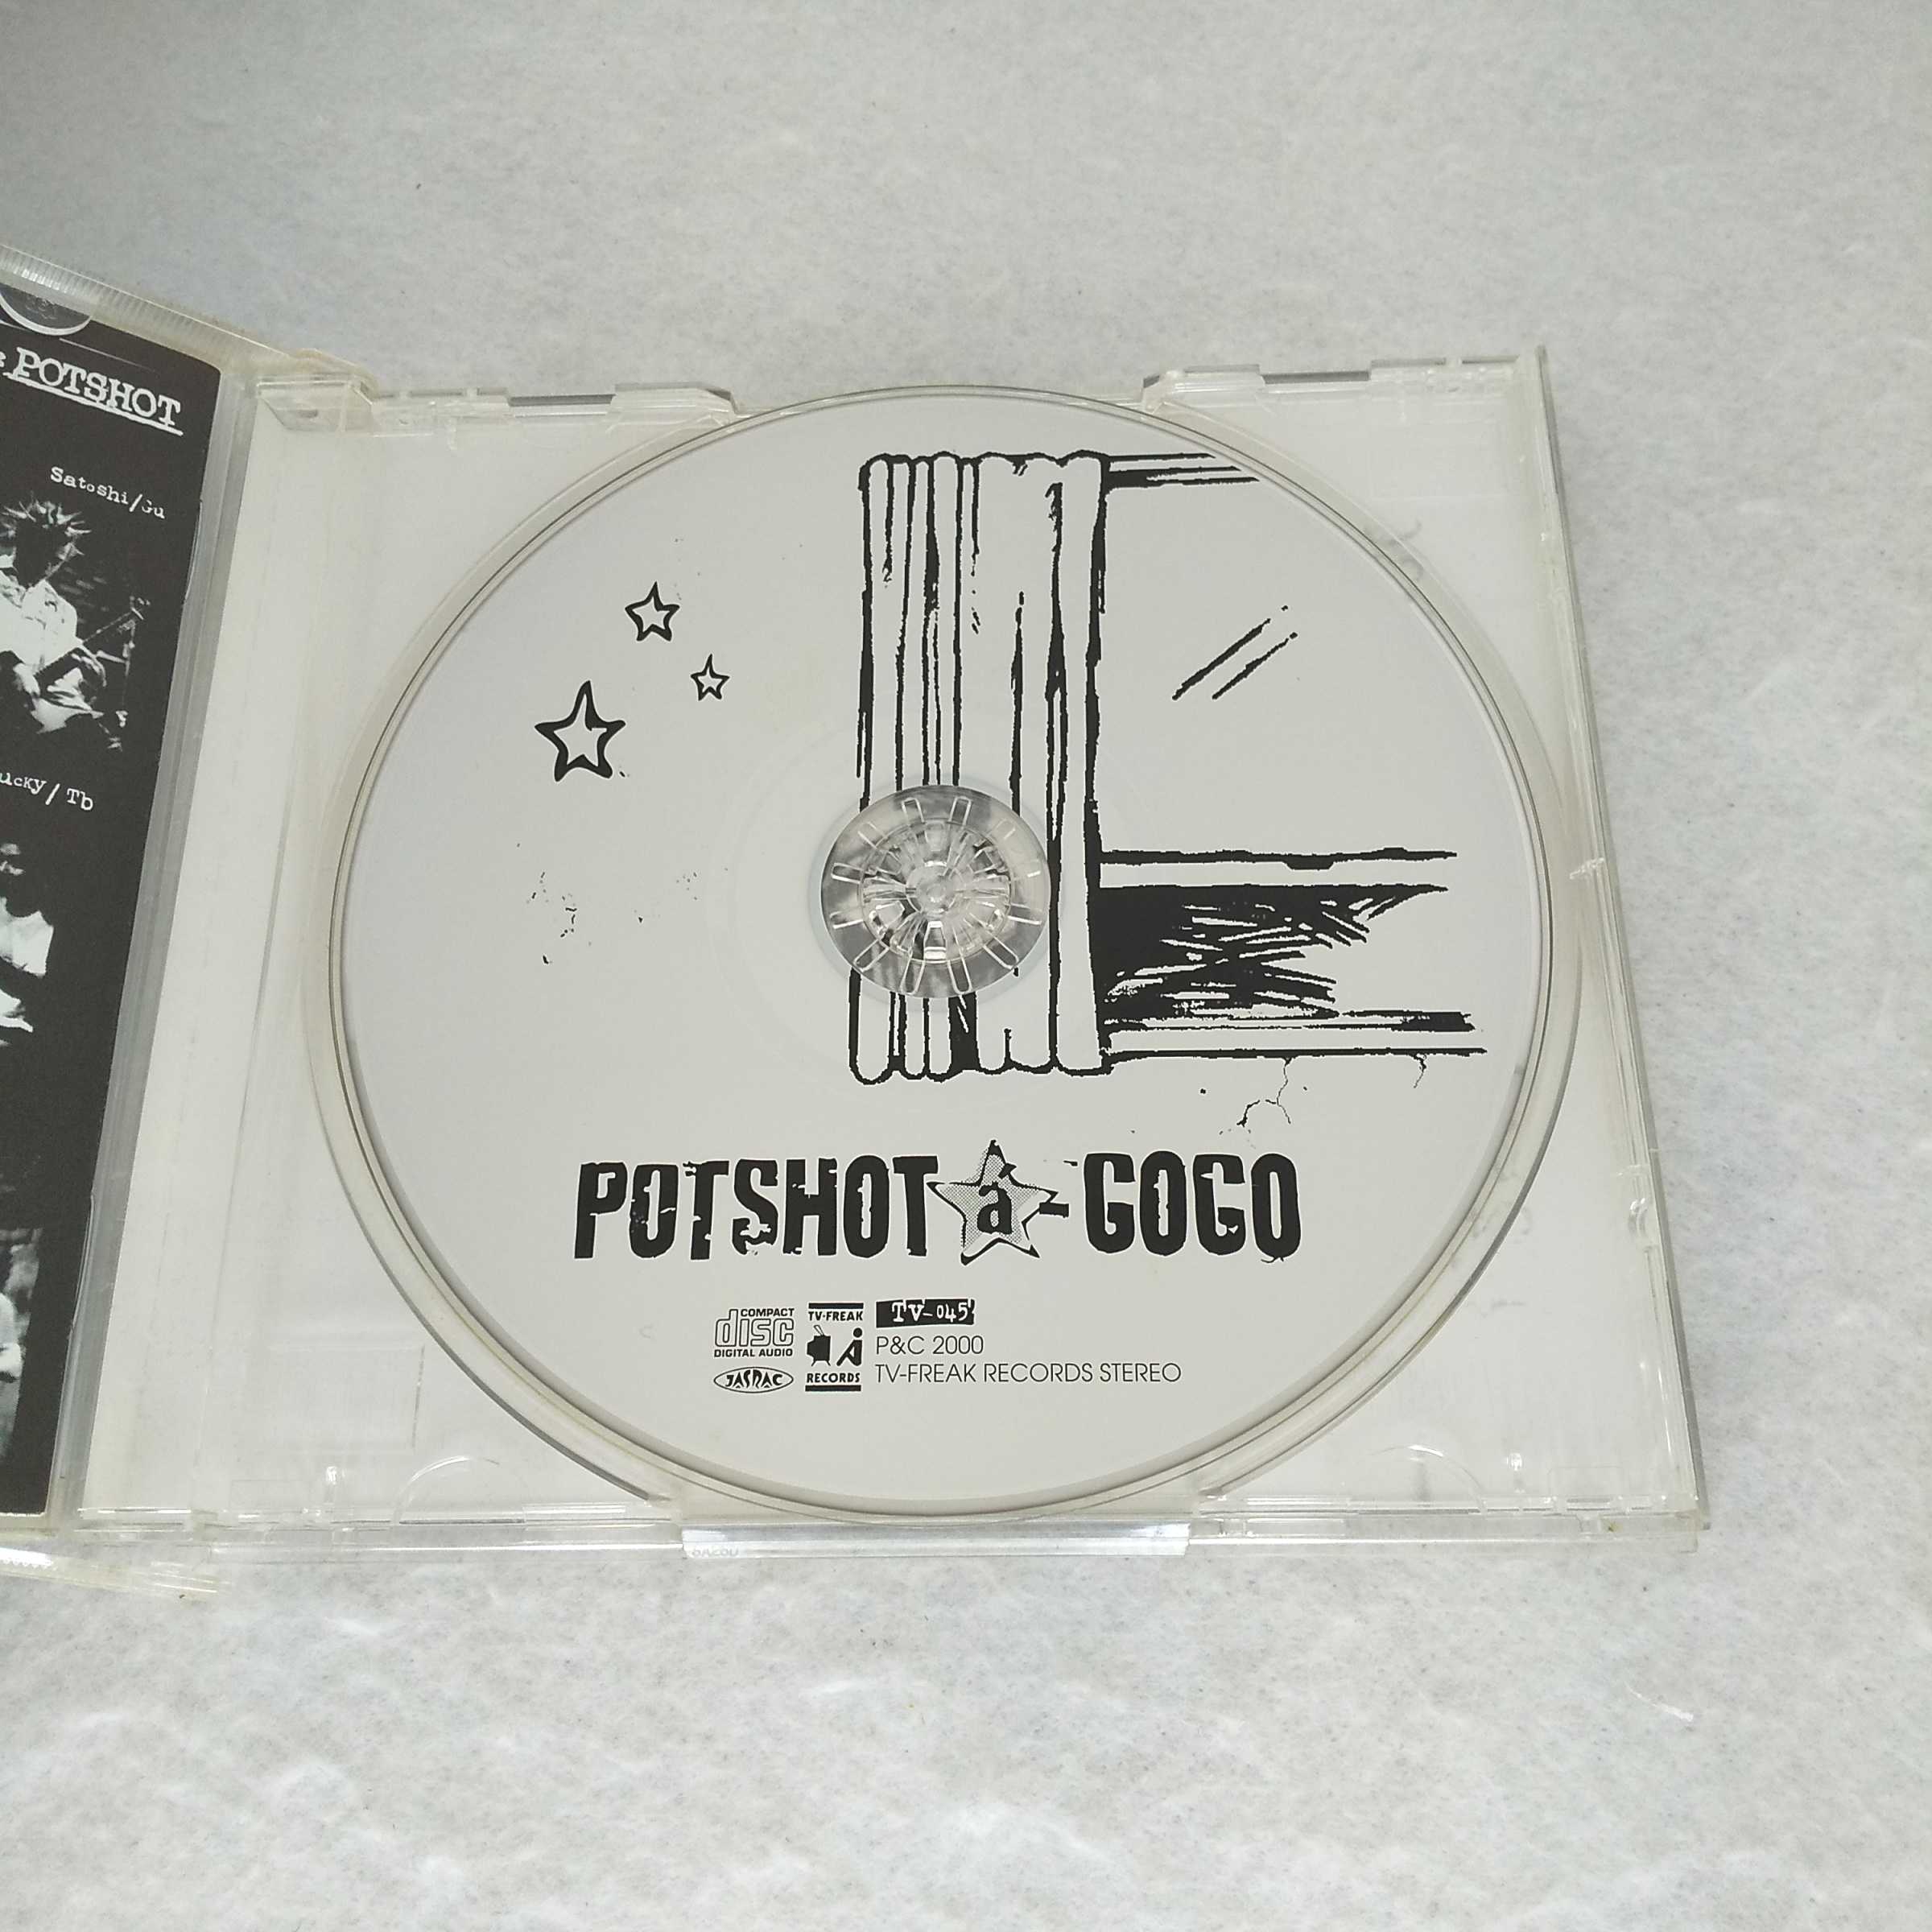 AC11818 【中古】 【CD】 POTSHOT a-GOGO/POTSHOT